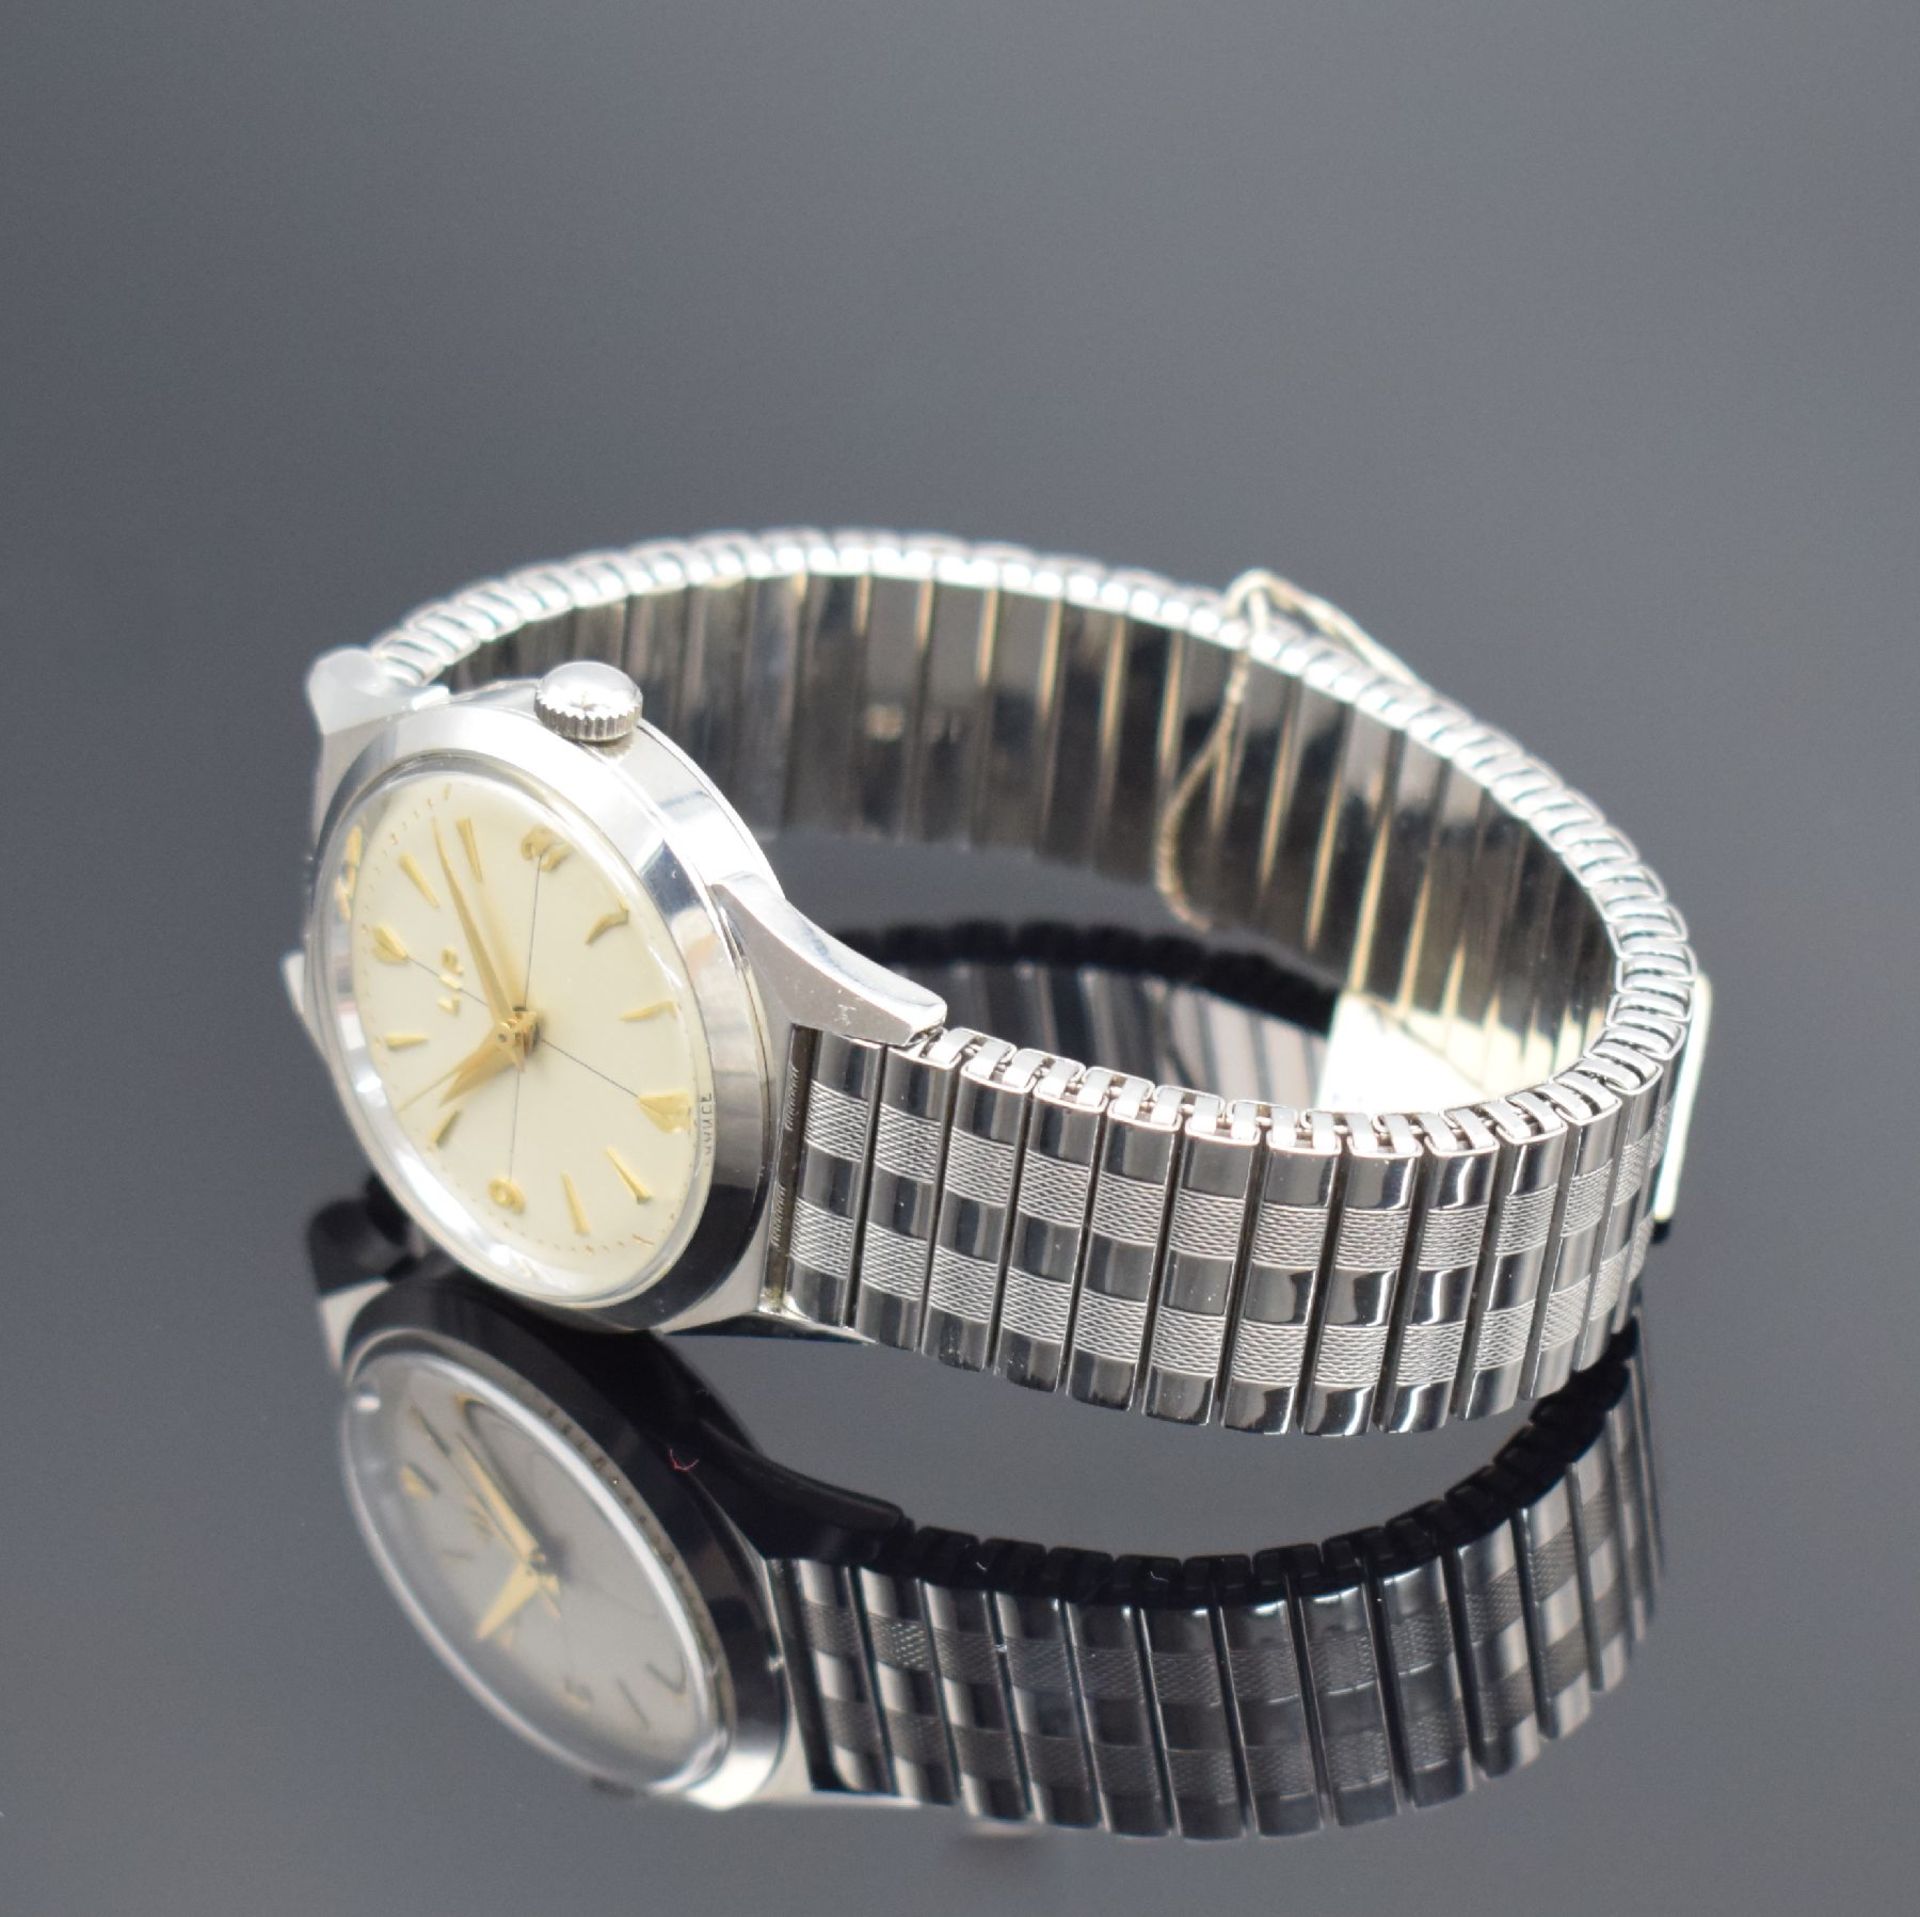 LIP nahezu neuwertige Armbanduhr in Stahl, Frankreich um - Image 3 of 7